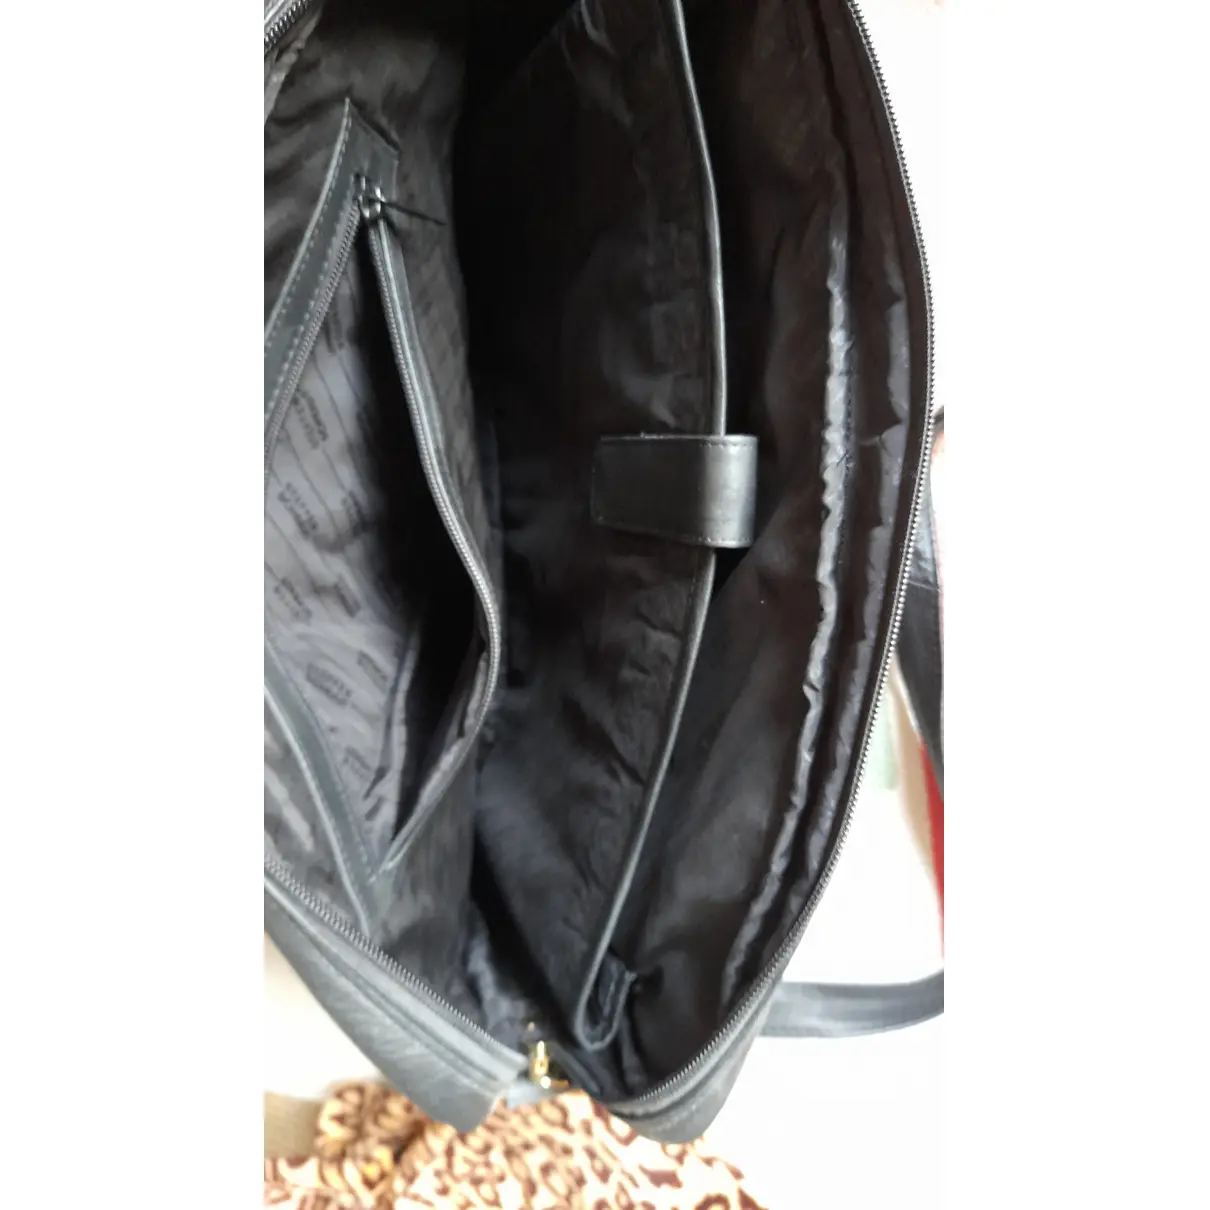 Leather handbag Steffen Schraut